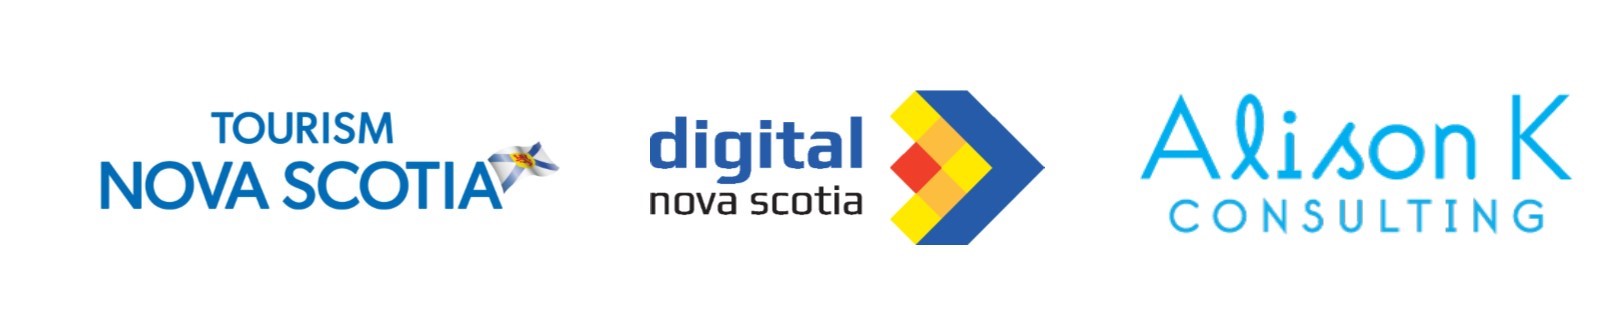 Tourism Nova Scotia, Digital Nova Scotia, Alison K Consulting logos